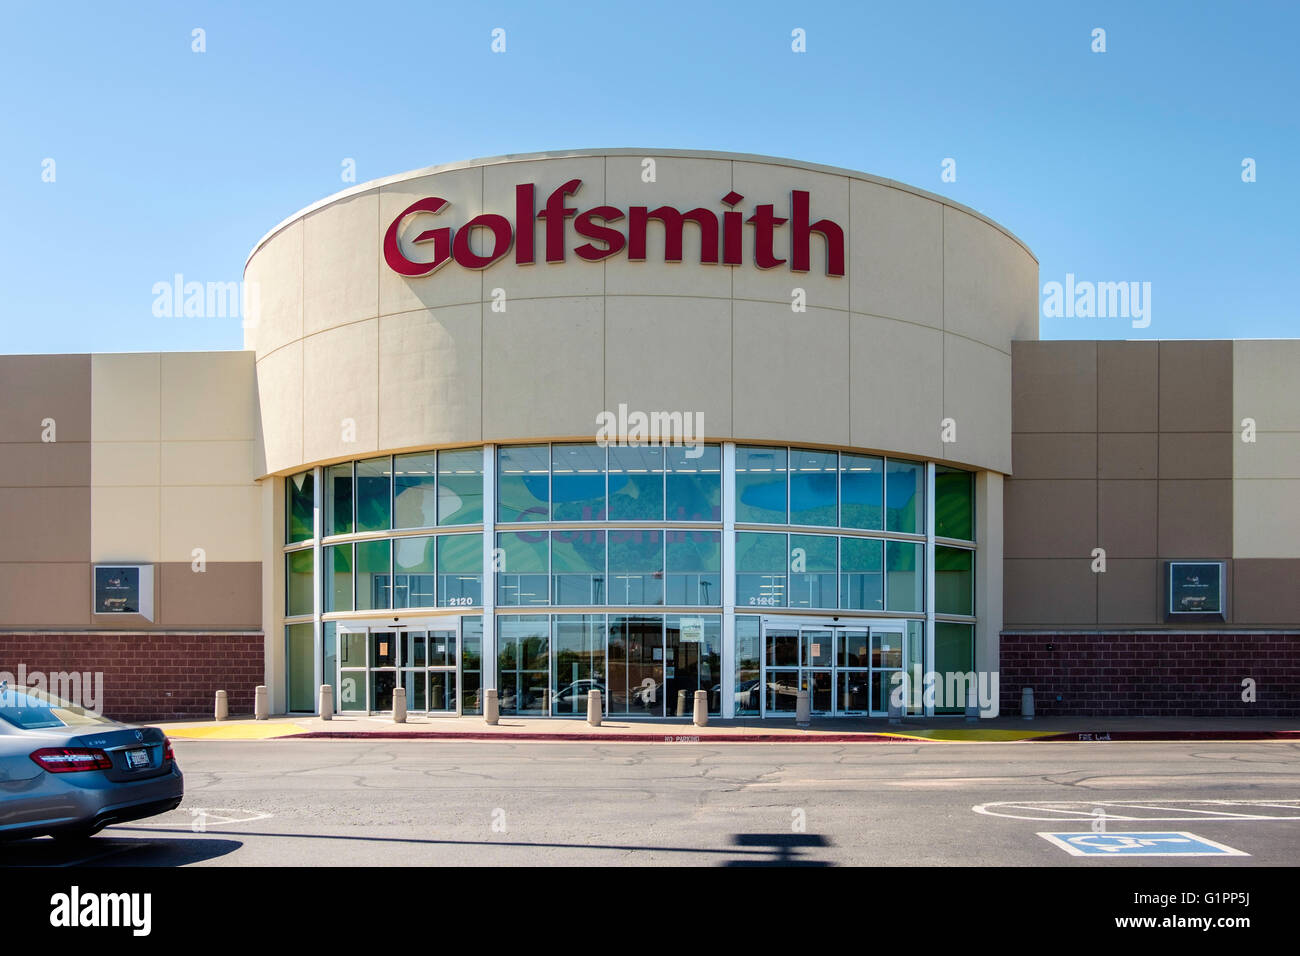 L'extérieur de Golfsmith, ou Golfsmith International, un haut-tec détaillant multi-canal de l'équipement de golf. Oklahoma City, OK Banque D'Images